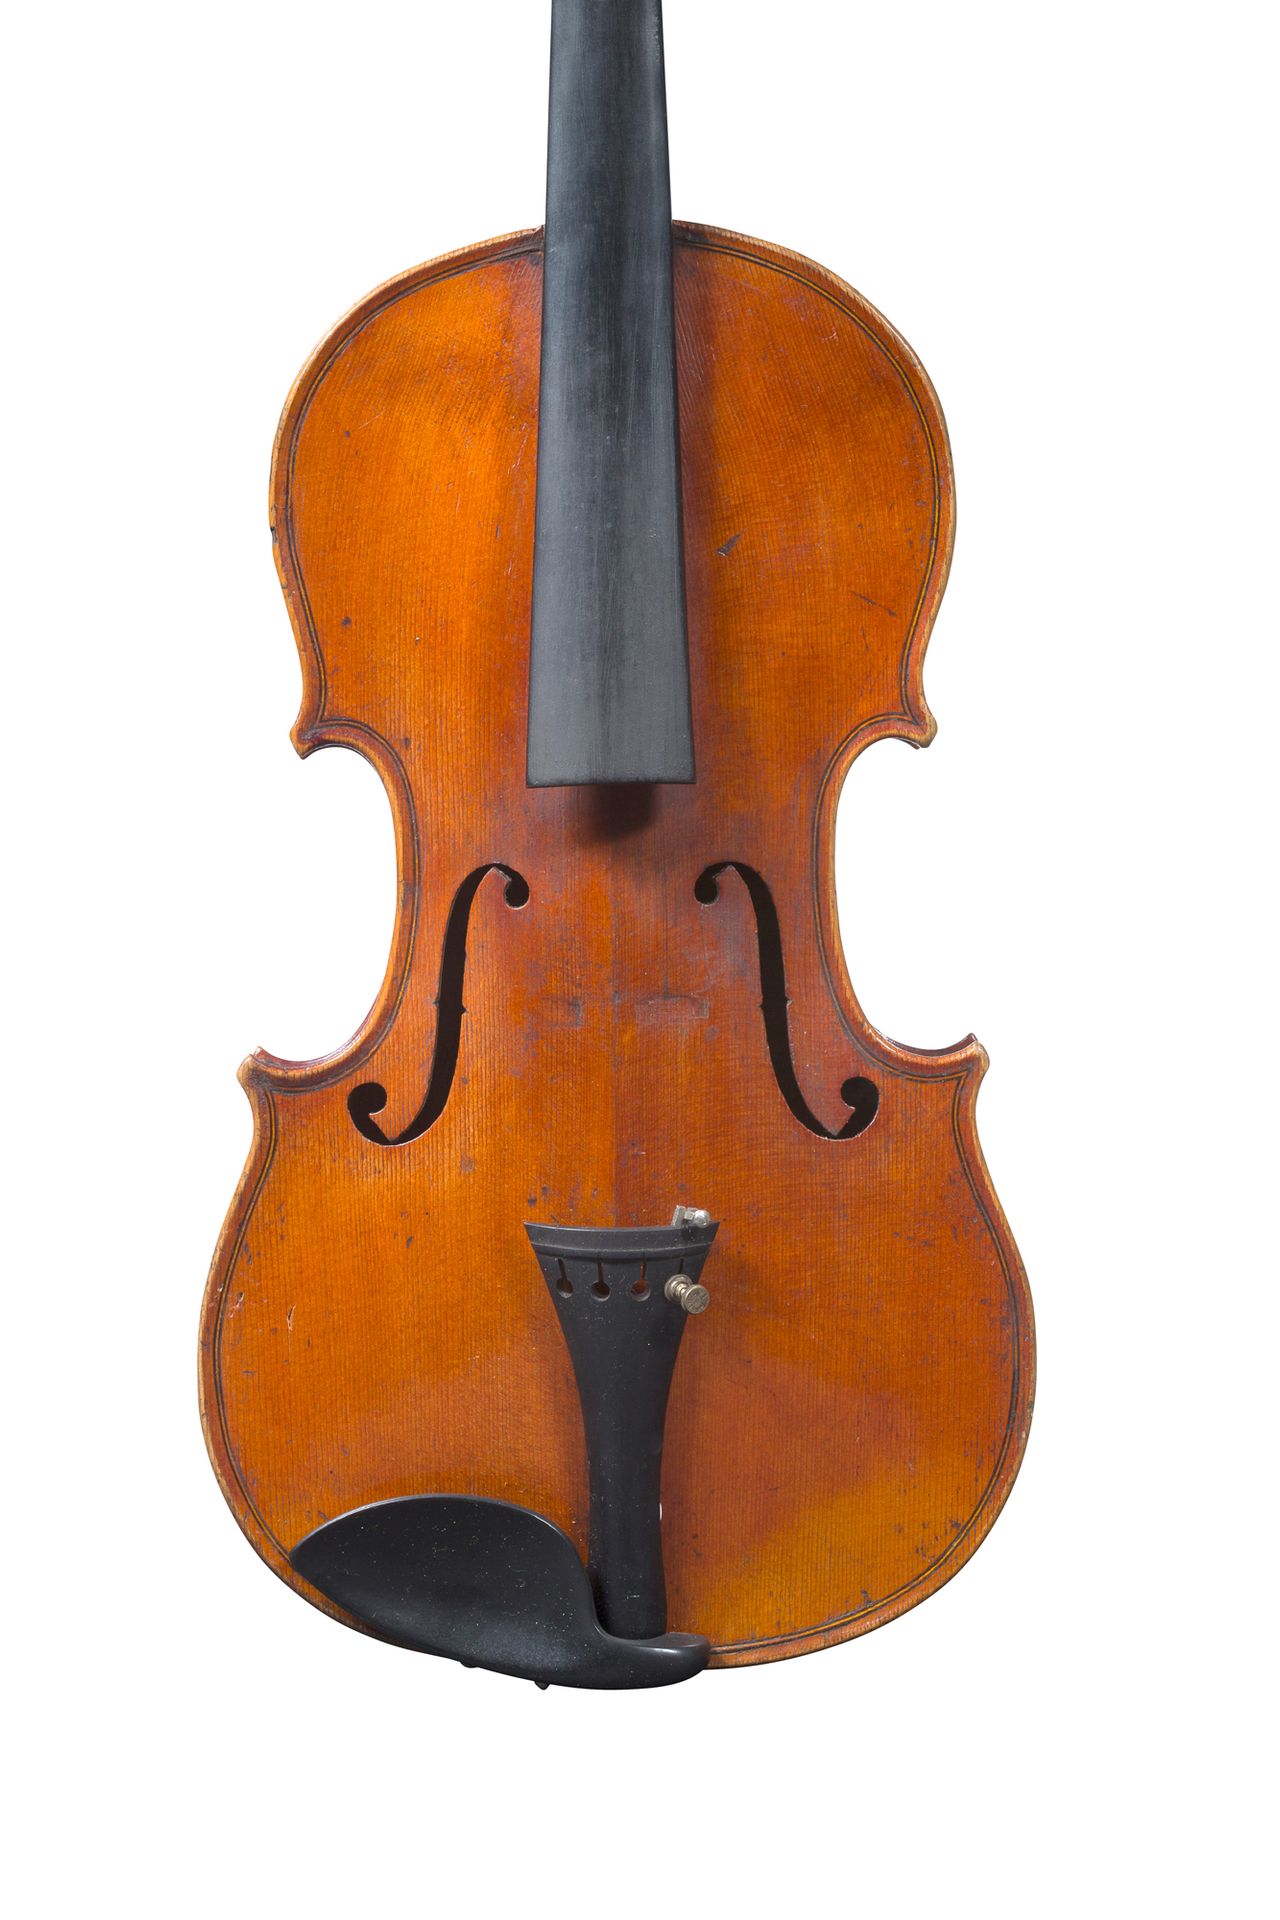 Null Hübsche Geige, die in Mirecourt hergestellt wurde.
Trägt das Etikett von Fr&hellip;